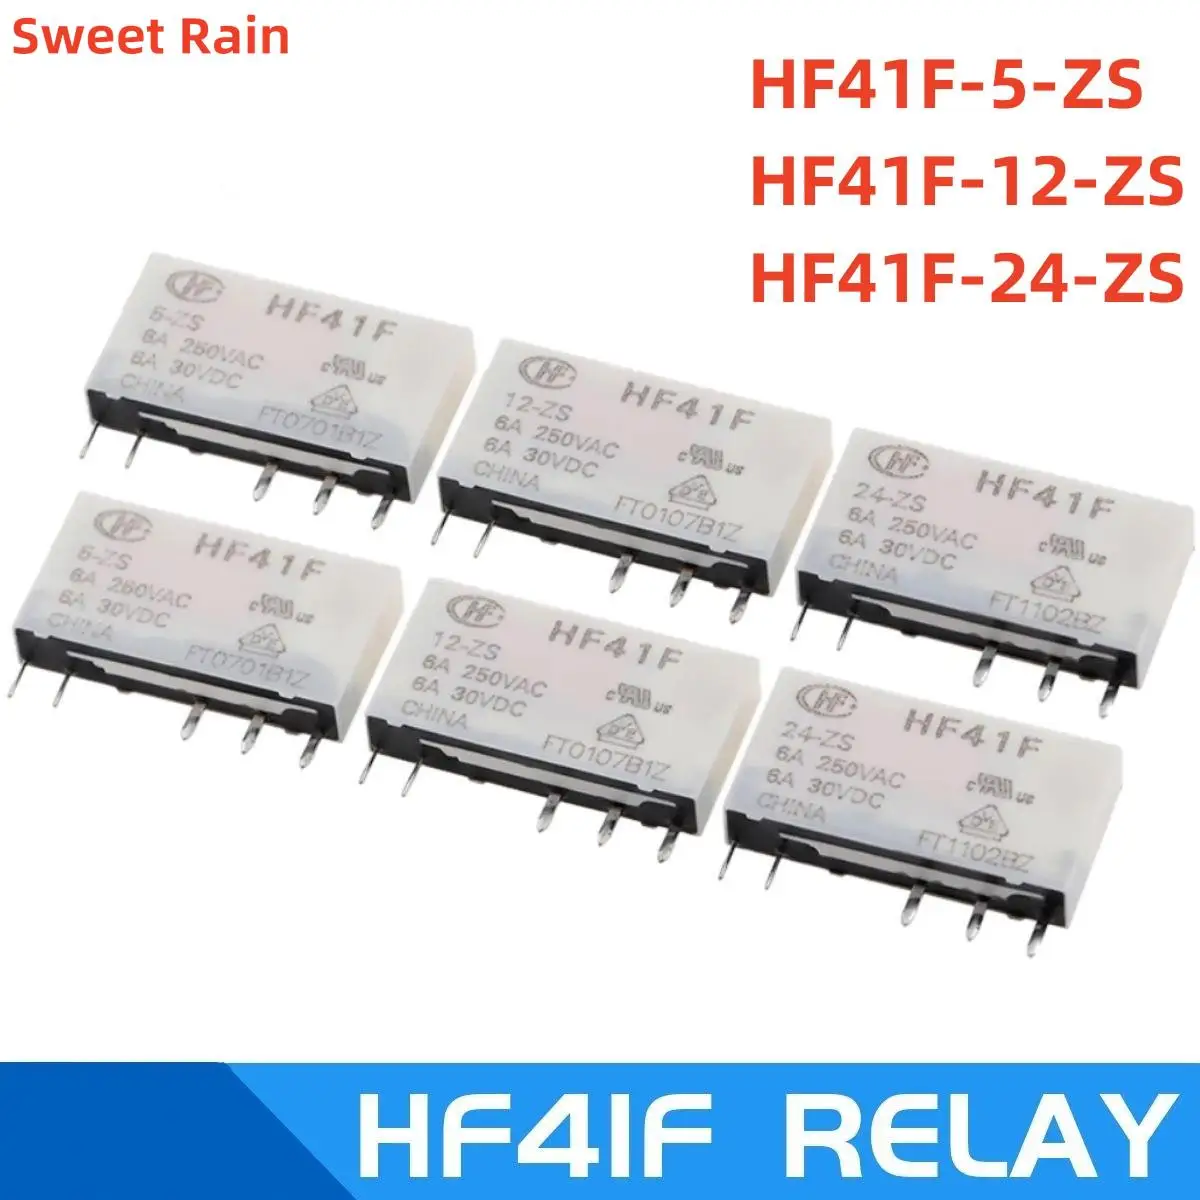 

10Pcs New HF relay HF41F-5-ZS HF41F-12-ZS HF41F-24-ZS HF41F 5V 12V 24V ZS Ultra thin power relay 5 Pin 6A 41F-1Z-C2-1 relay base